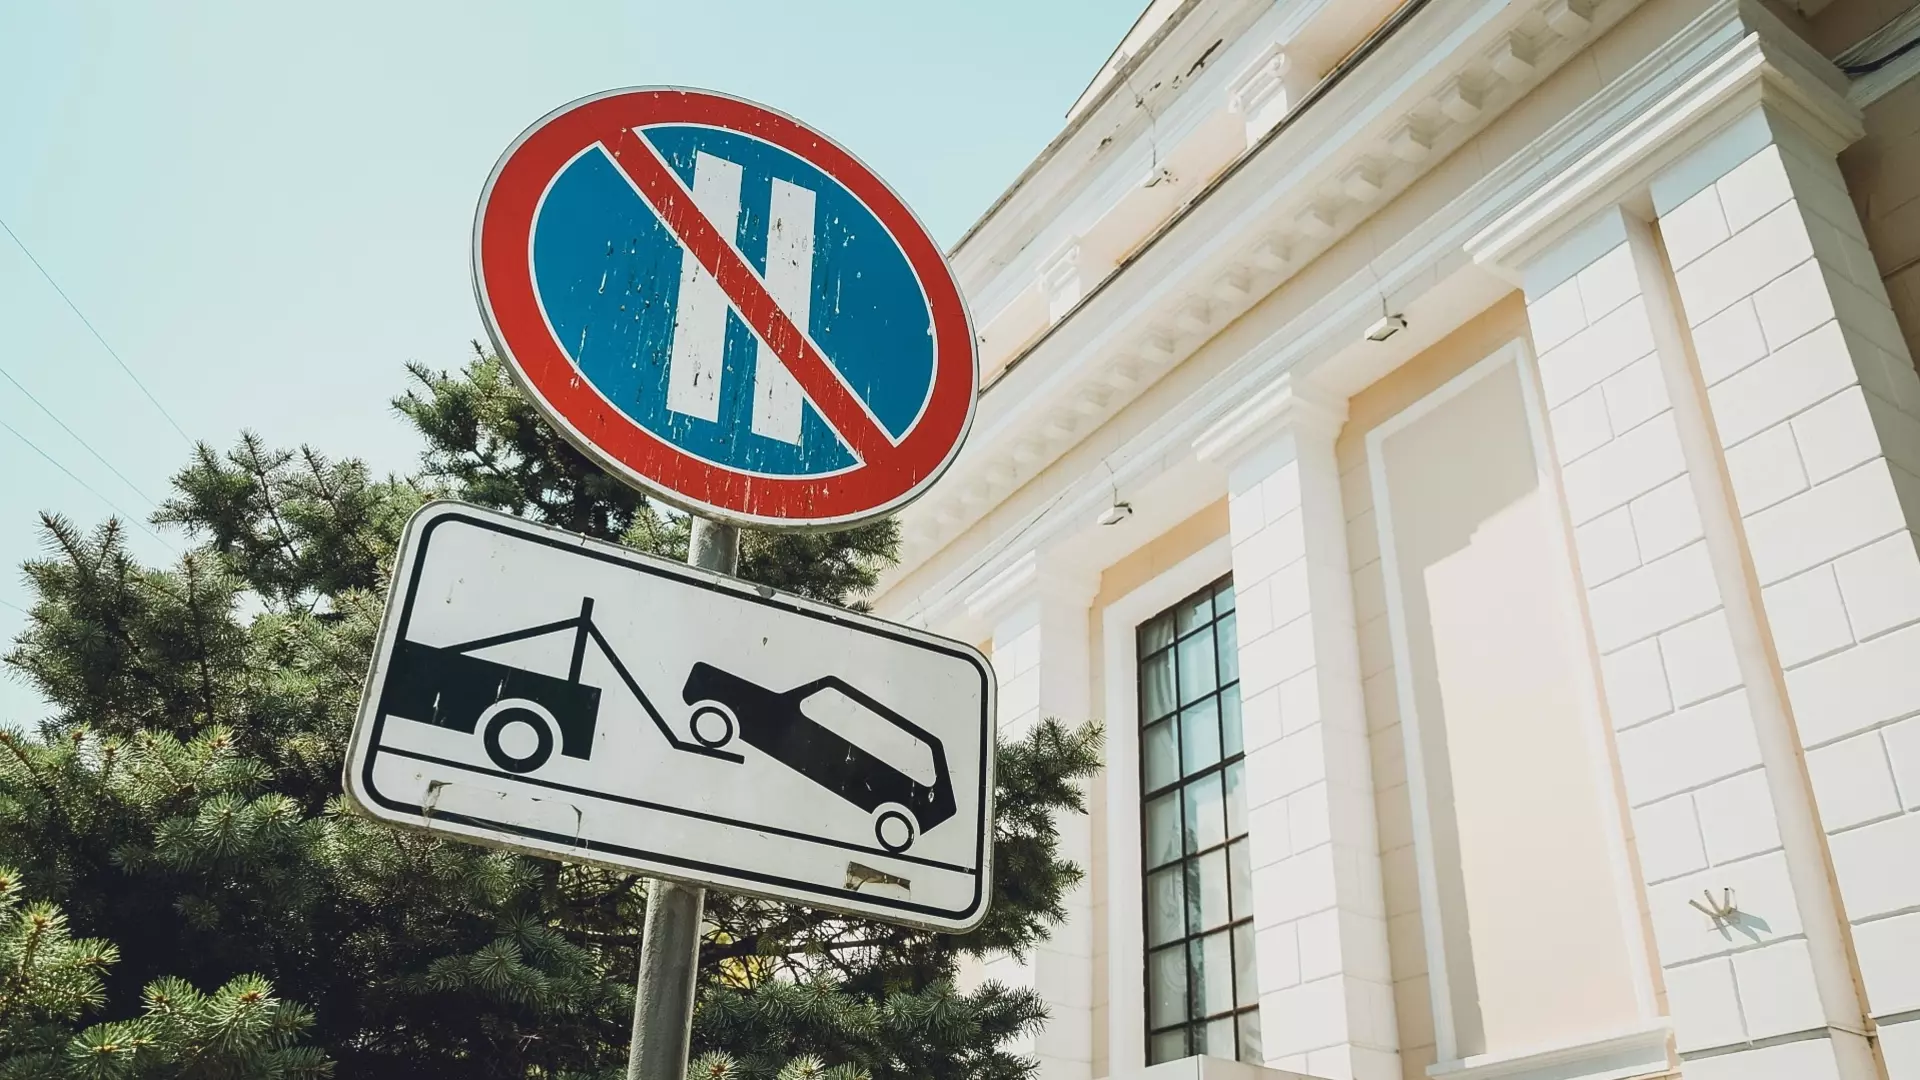 Парковку на восьми улицах запретят в Екатеринбурге